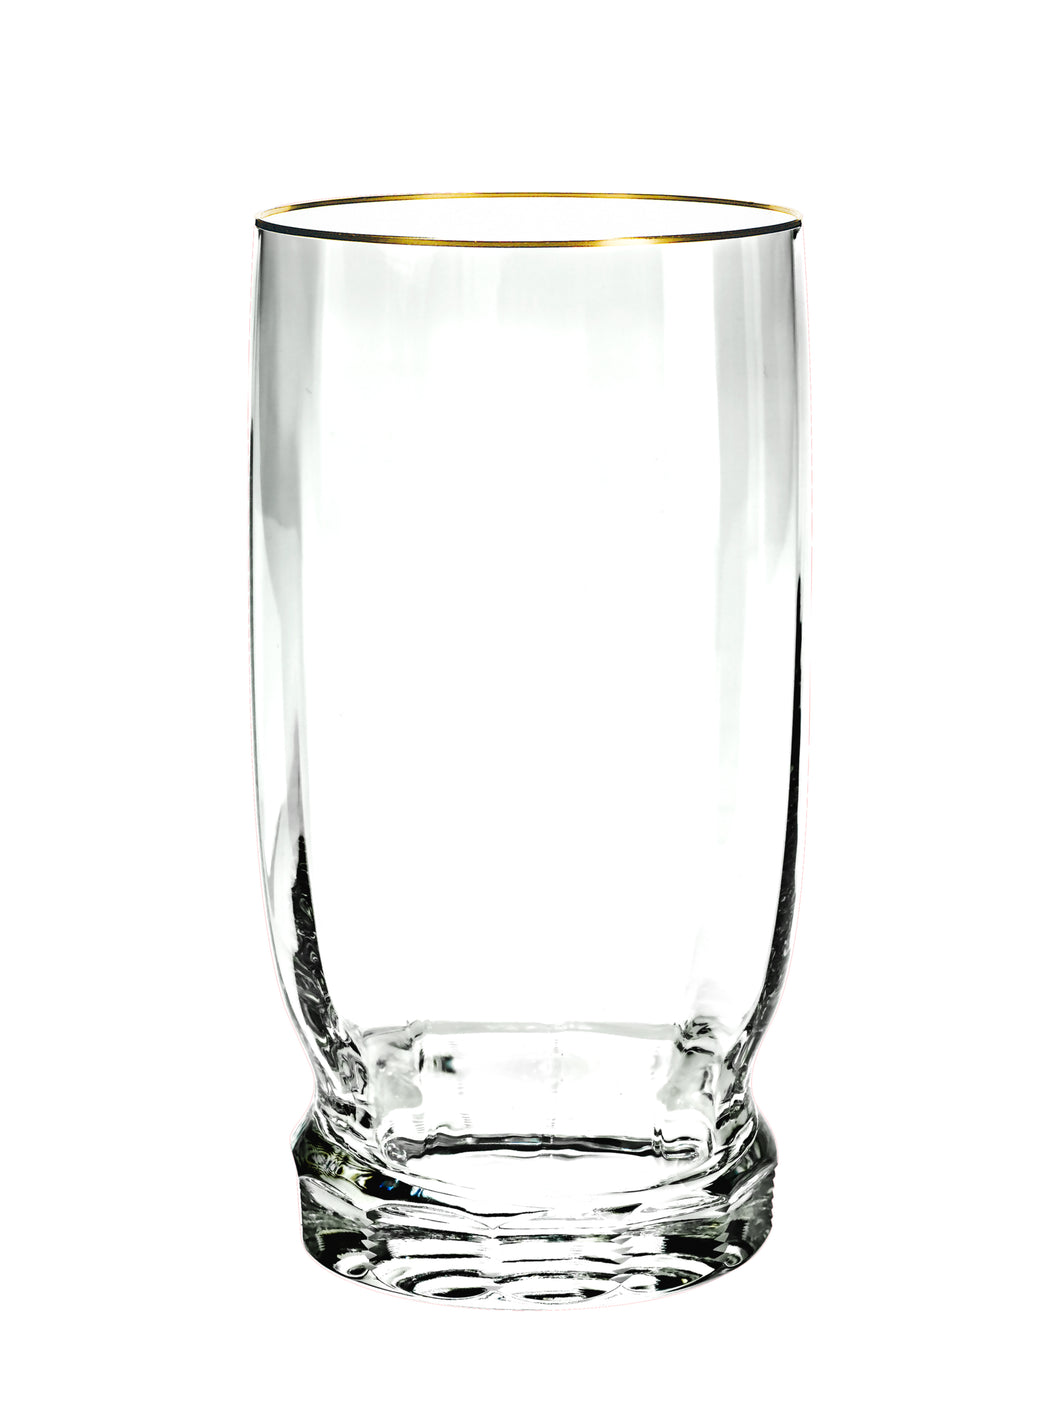 DELPHI Becher 160 mm - klares Glas, Flächenschliff, Eckenschliff, Goldrand